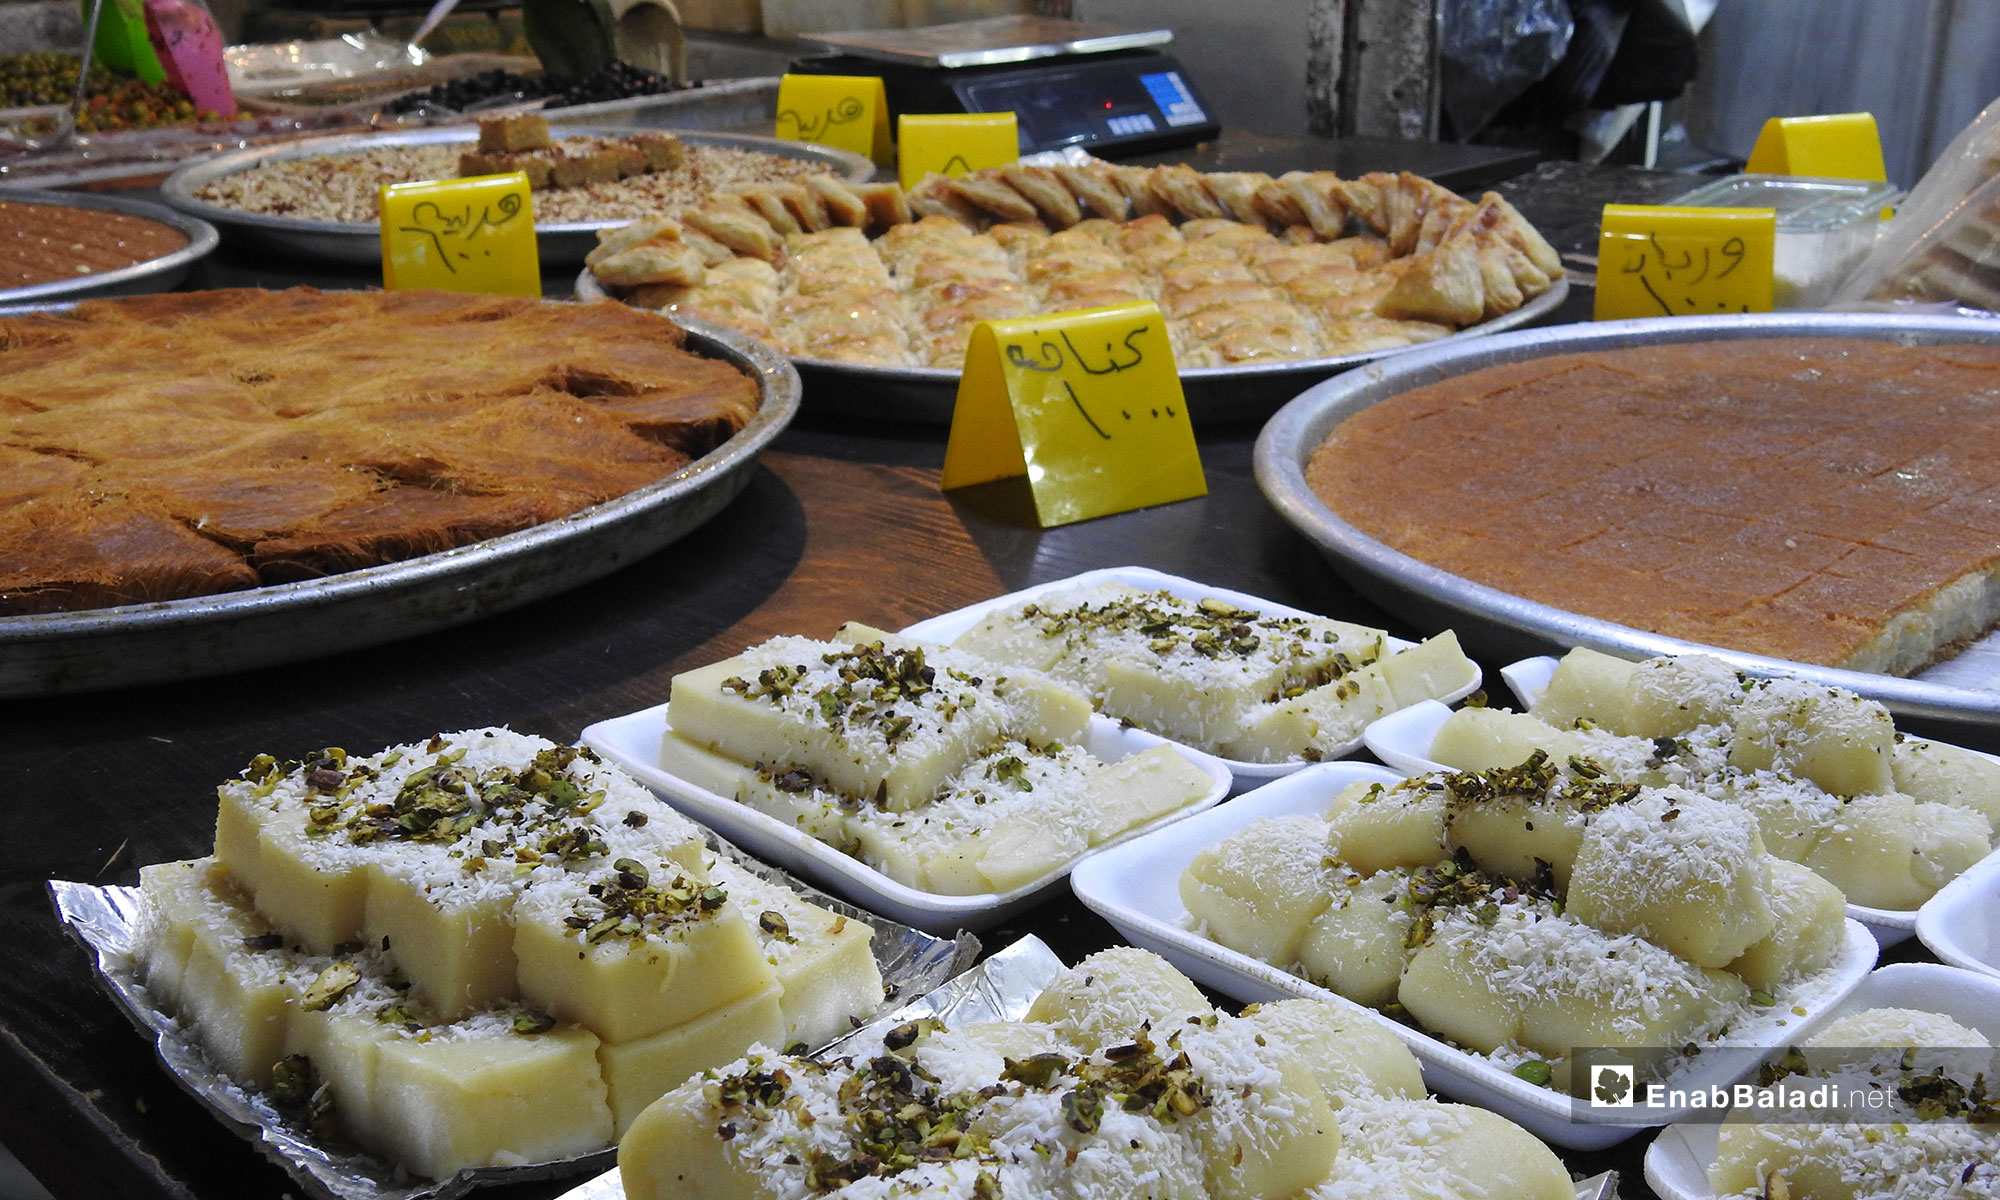 ضبط أسعار المواد الغذائية في أسواق مدينة اعزاز بريف حلب الشمالي - 5 من آيار 2019 (عنب بلدي)